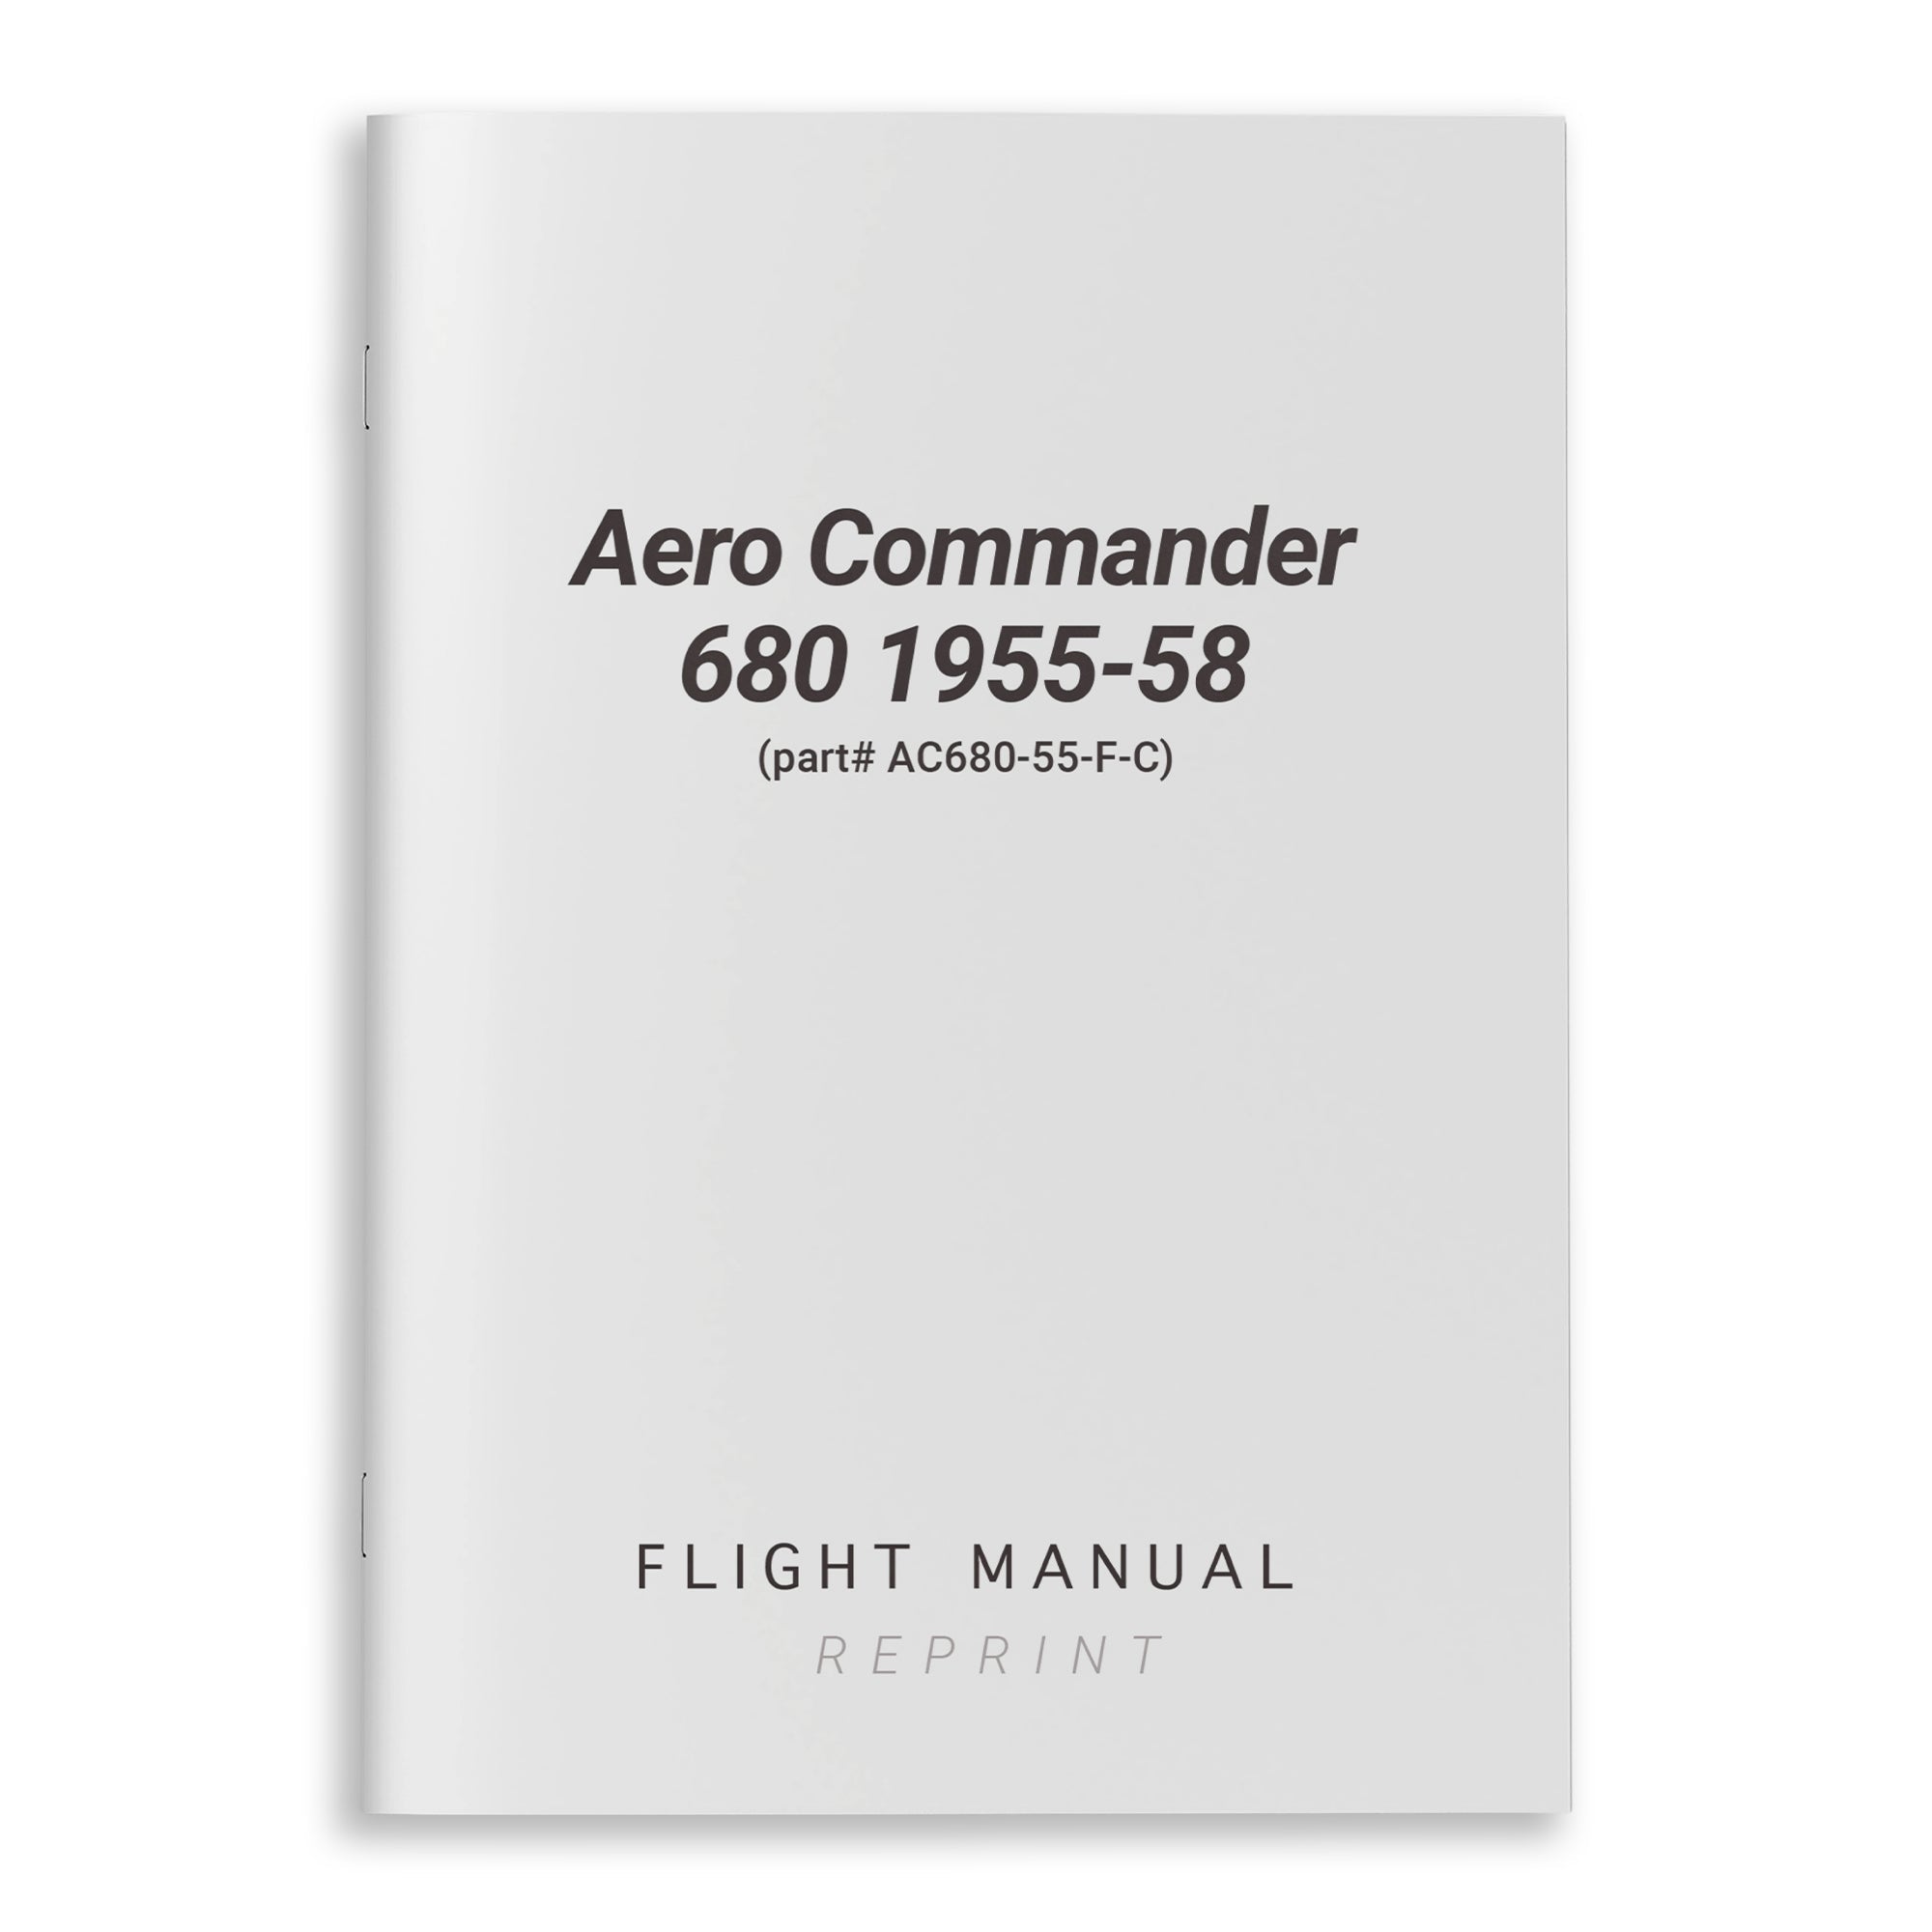 Aero Commander 680 1955-58 Flight Manual (part# AC680-55-F-C) - PilotMall.com